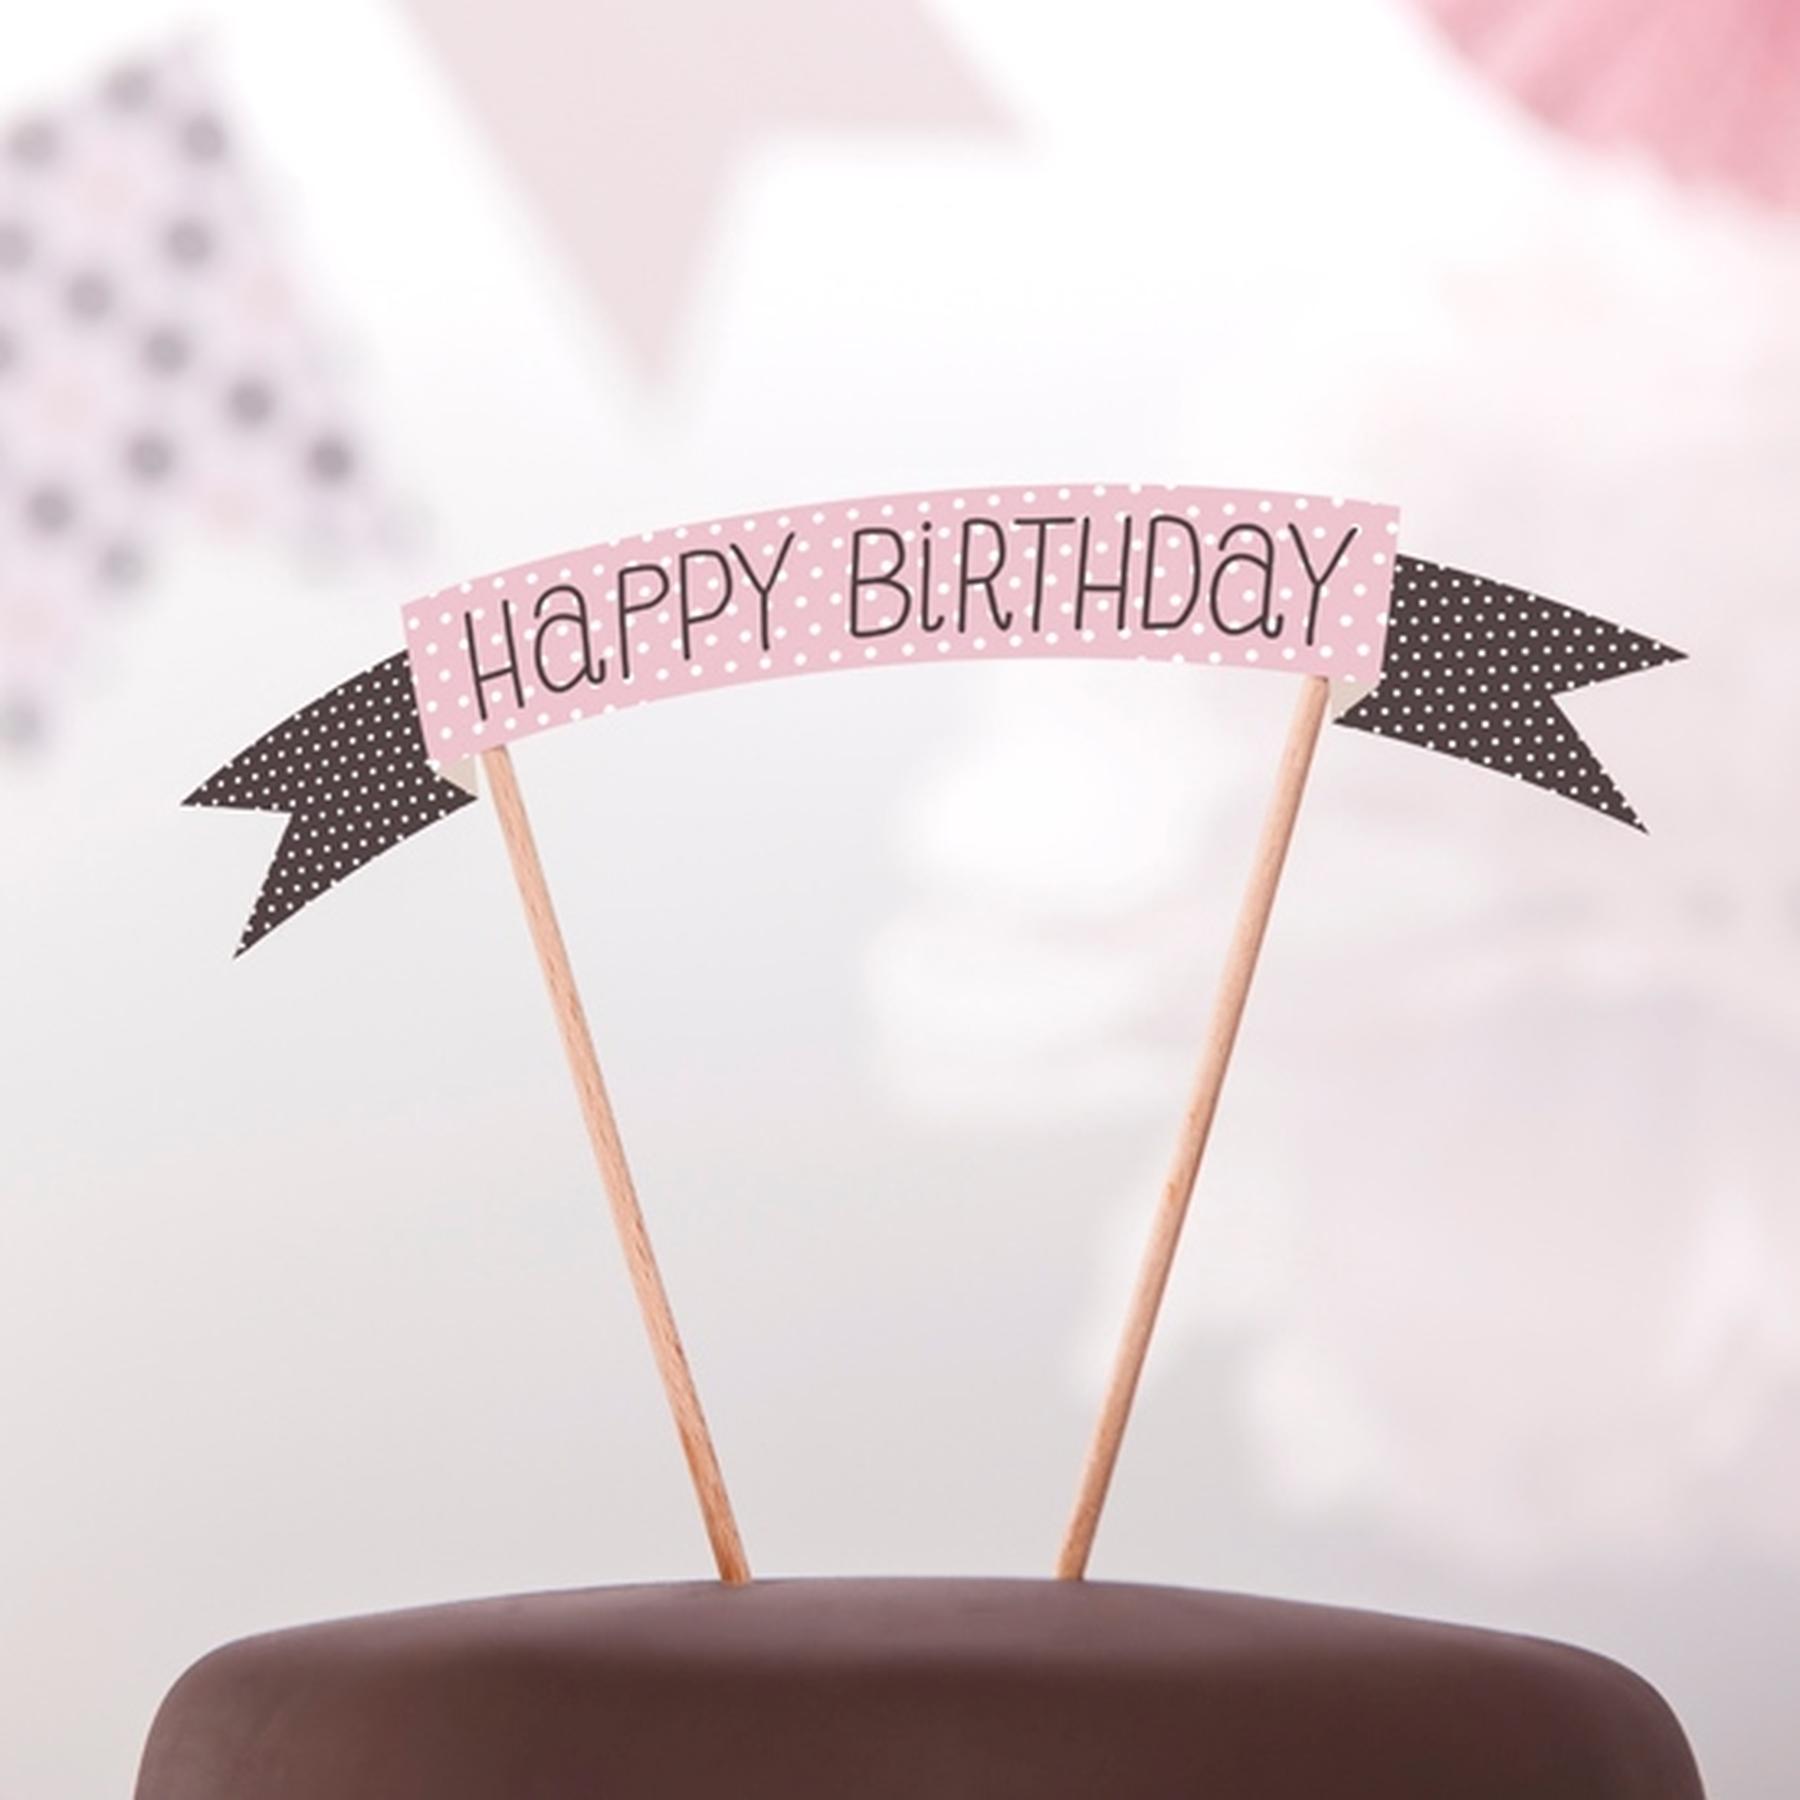 Cake topper - Happy Birthday - Rosa, Braun (bepunktet)